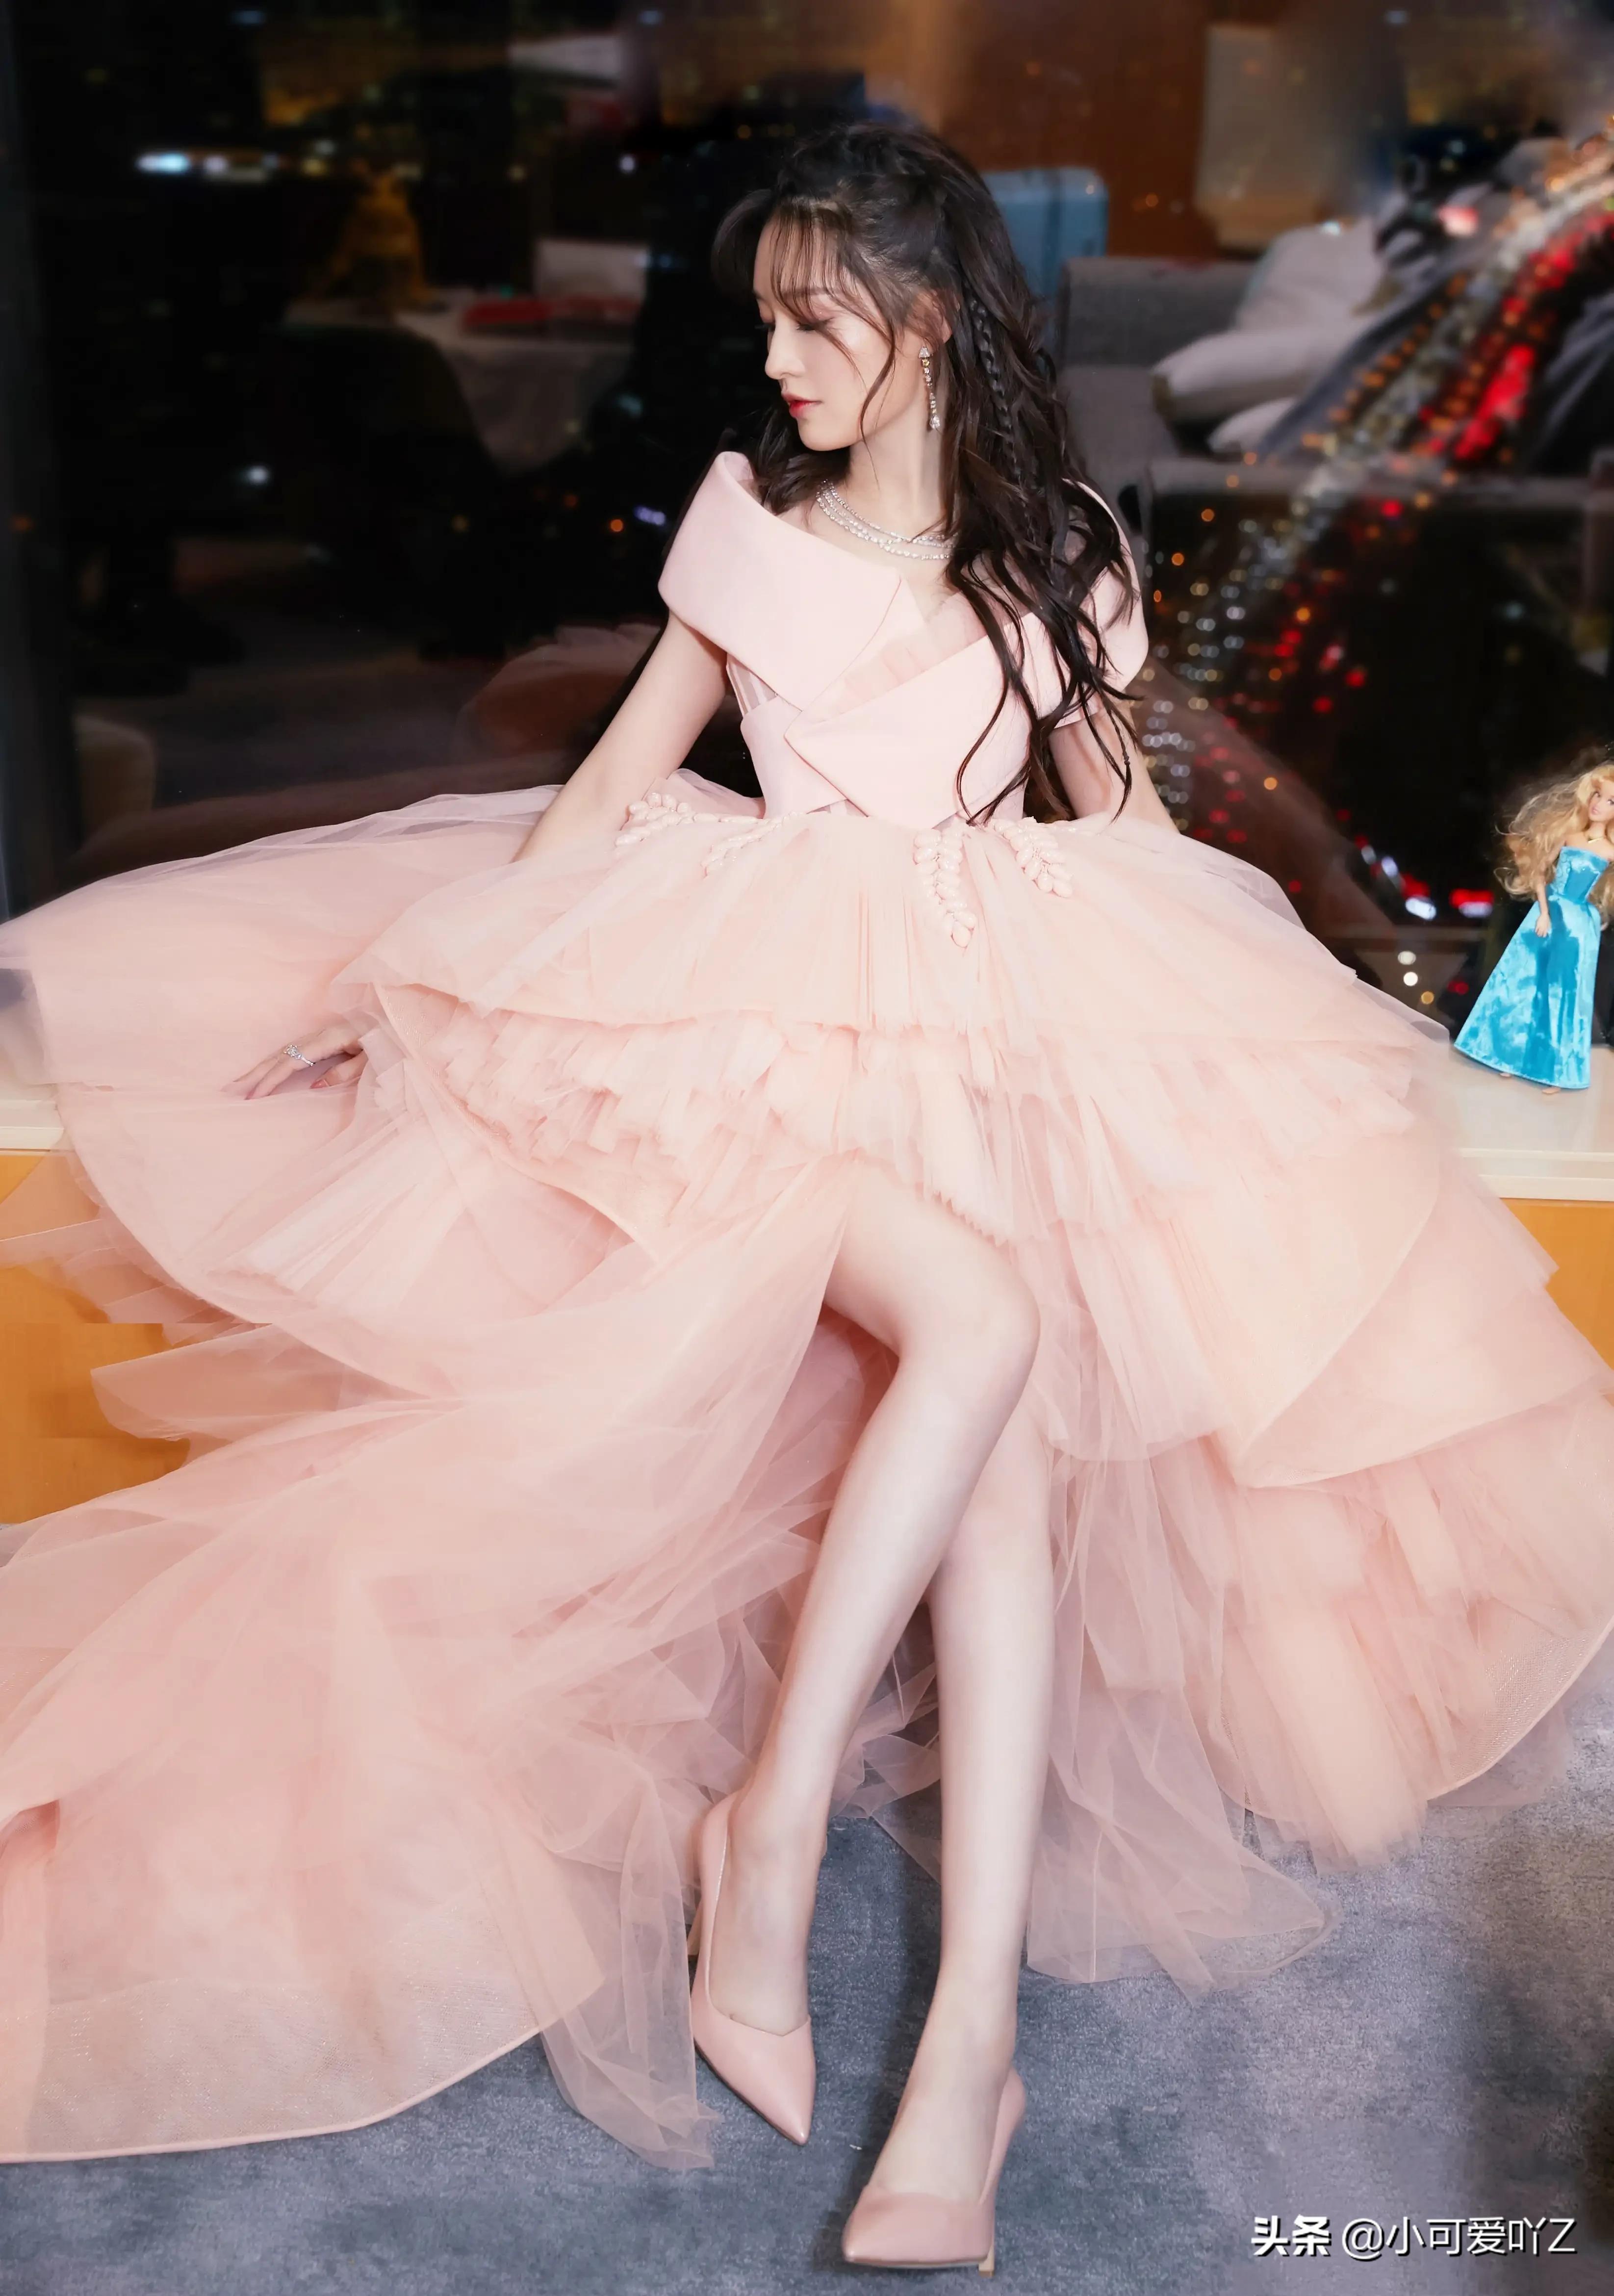 李沁，粉红色纱裙，卷发飘飘，美艳绝伦